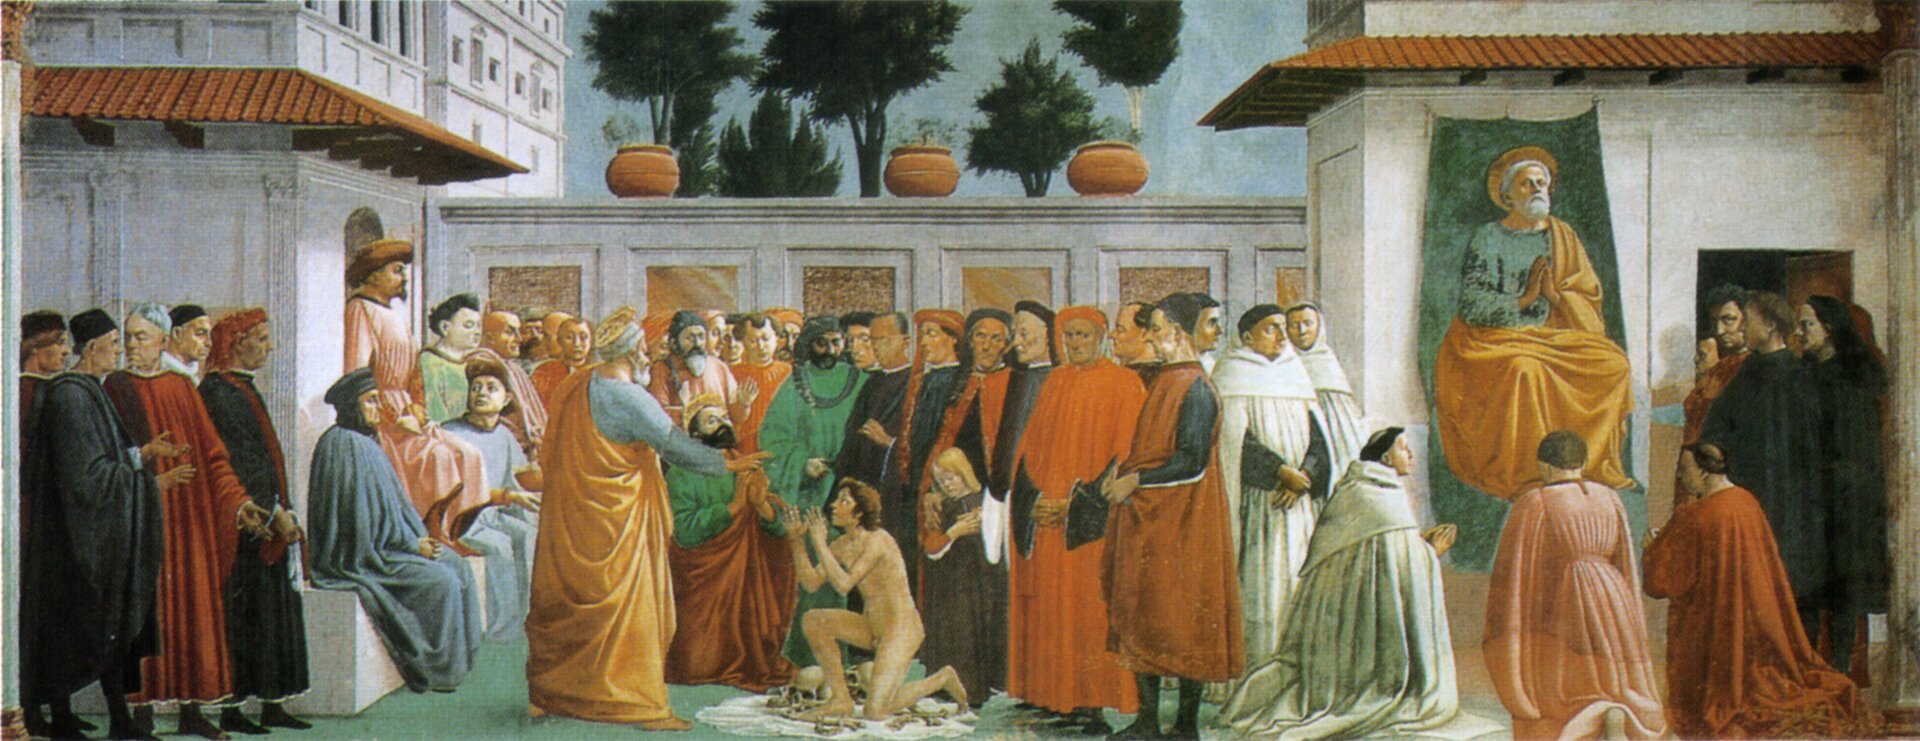 Ilustracja przedstawia obraz Masaccio i Filippino Lippi „Wskrzeszenie syna Teofila i kazanie świętego Piotra w świątyni”. Na obrazie znajduje się święty Piotr, który głosi kazanie. Dookoła niego znajduje się wielu wiernych. Wszyscy ubrani są w długie szaty. Część z nich ma okrycie głowy. Przed świętym Piotrem klęczy nagi mężczyzna, do którego święty Piotr wystawia dłoń. Za postaciami znajdują się budynki świątyni.